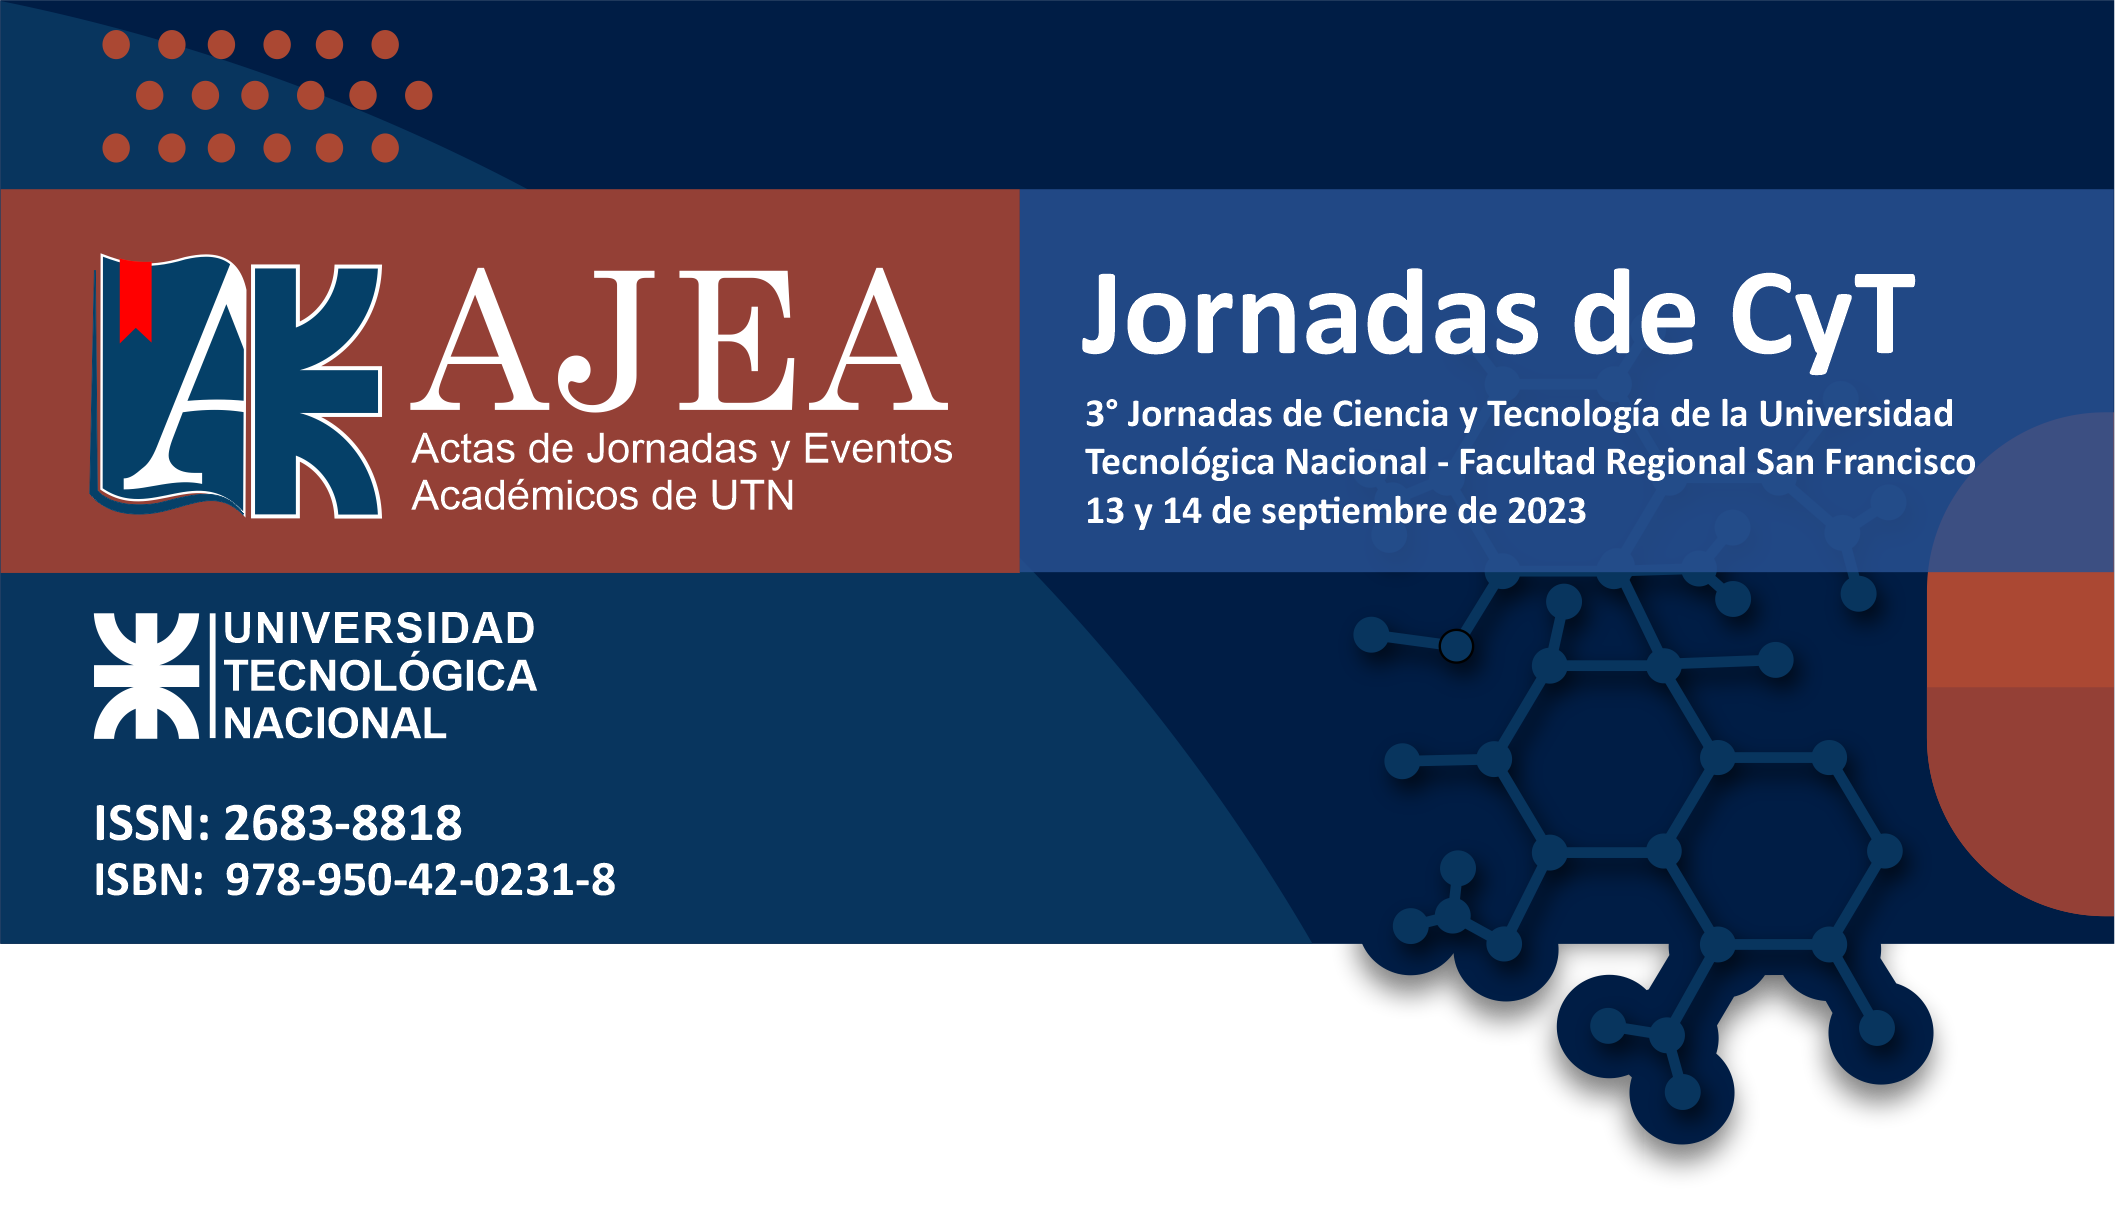                     Ver Núm. AJEA 26 (2023): Jornadas de Ciencia y Tecnología 2023
                